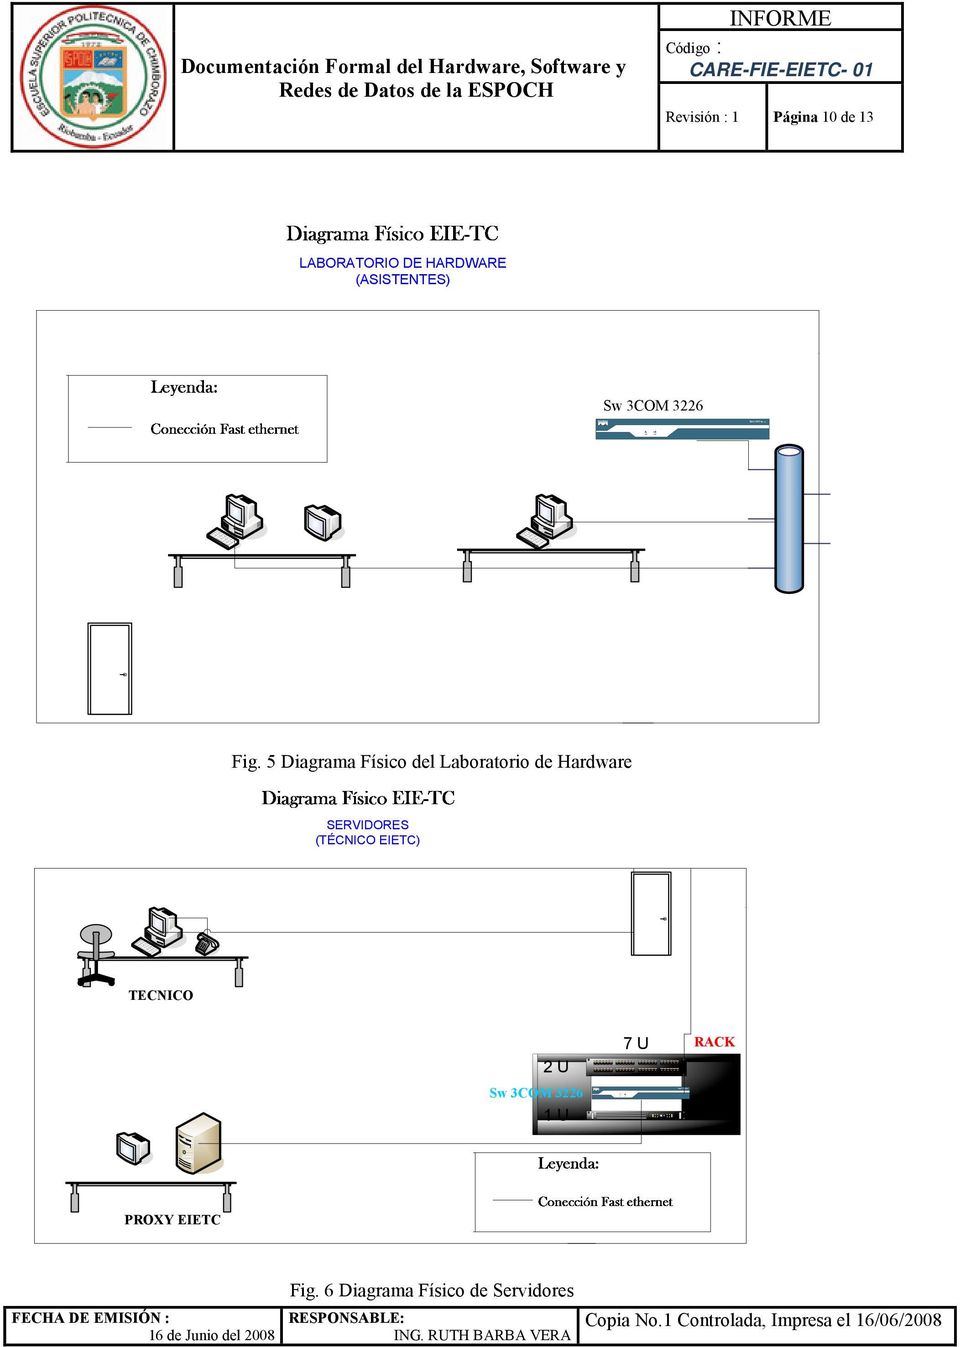 5 Diagrama Físico del Laboratorio de Hardware SERVIDORES (TÉCNICO